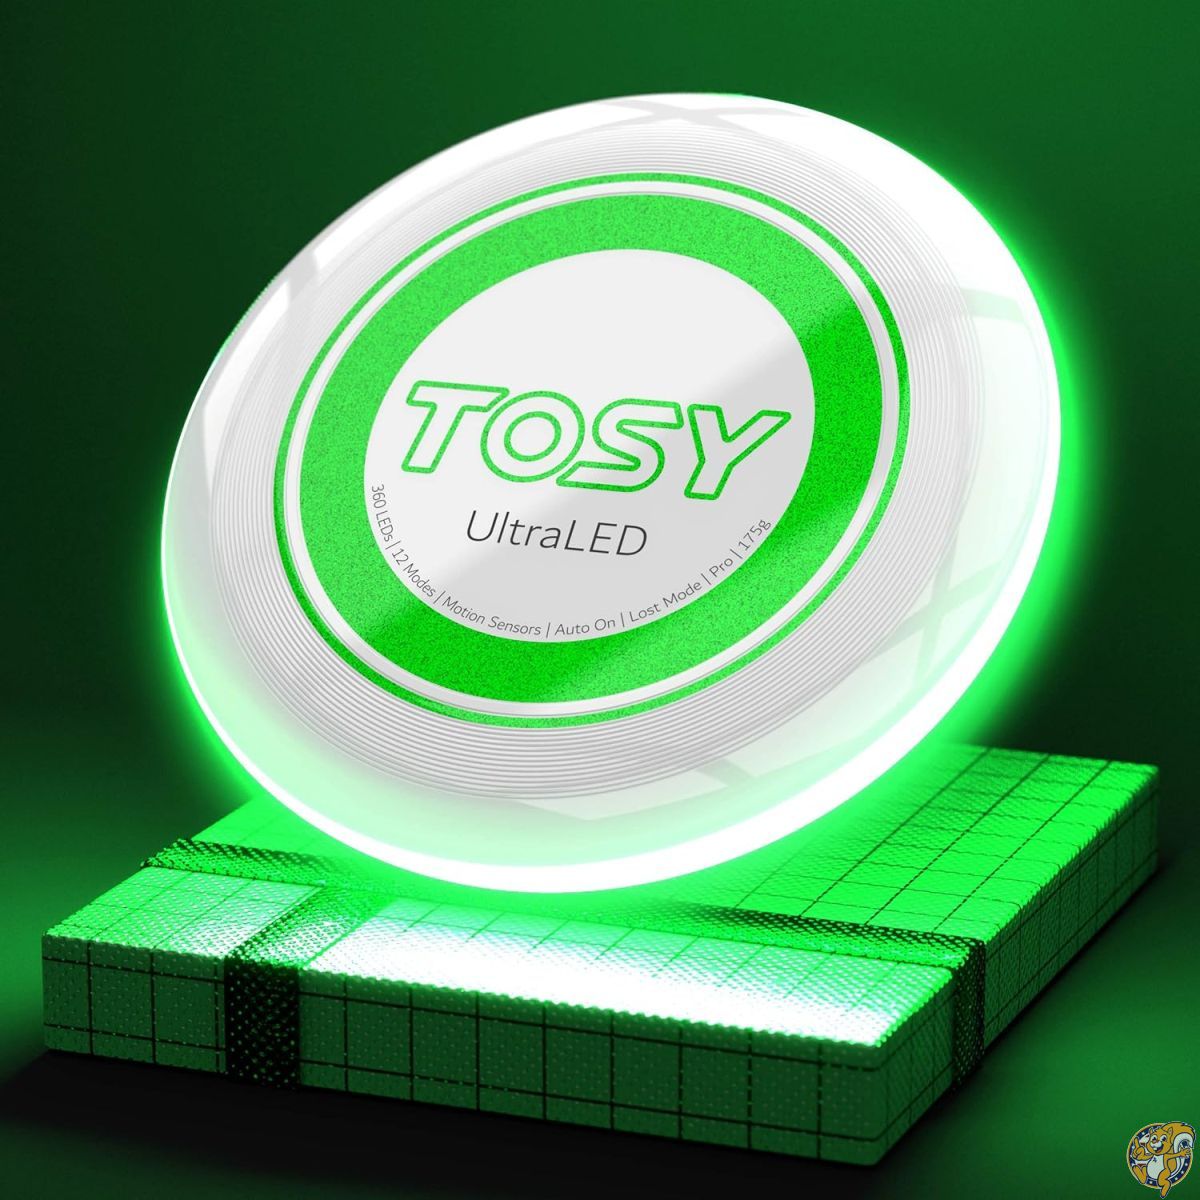 TOSY (トシー) 36個と360個のLED フライングディスク - 非常に明るい スマートモード 暗闇で光る 自動点灯 充電式 175g 誕生日やキャンプでのプレゼントに 男性/男の子/ティーン/子供向け